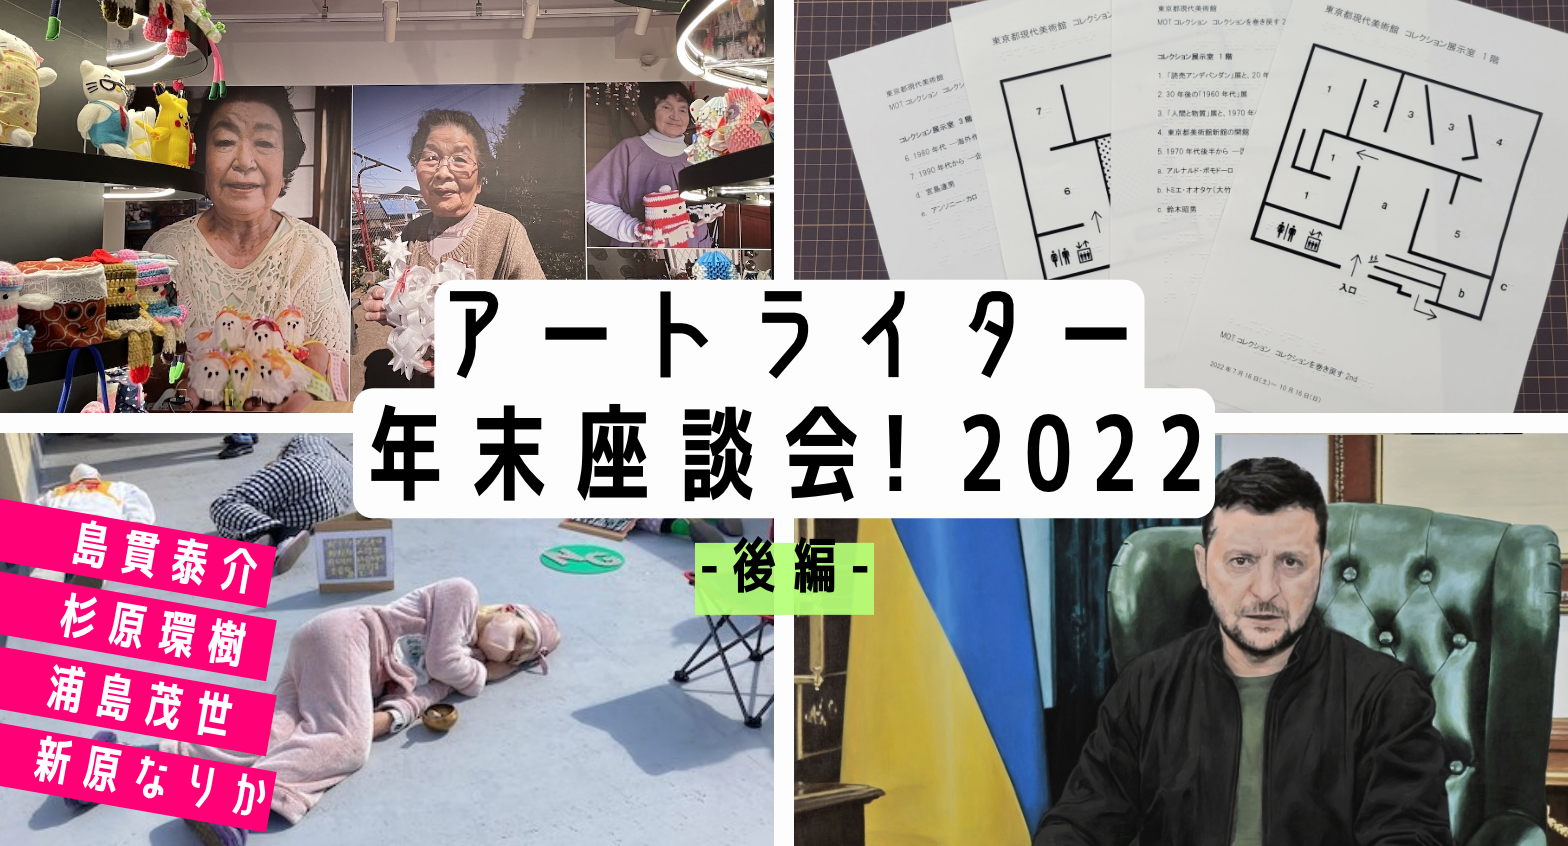 【2022年】ライター4人が語る、教育普及や炎上とフェミニズム